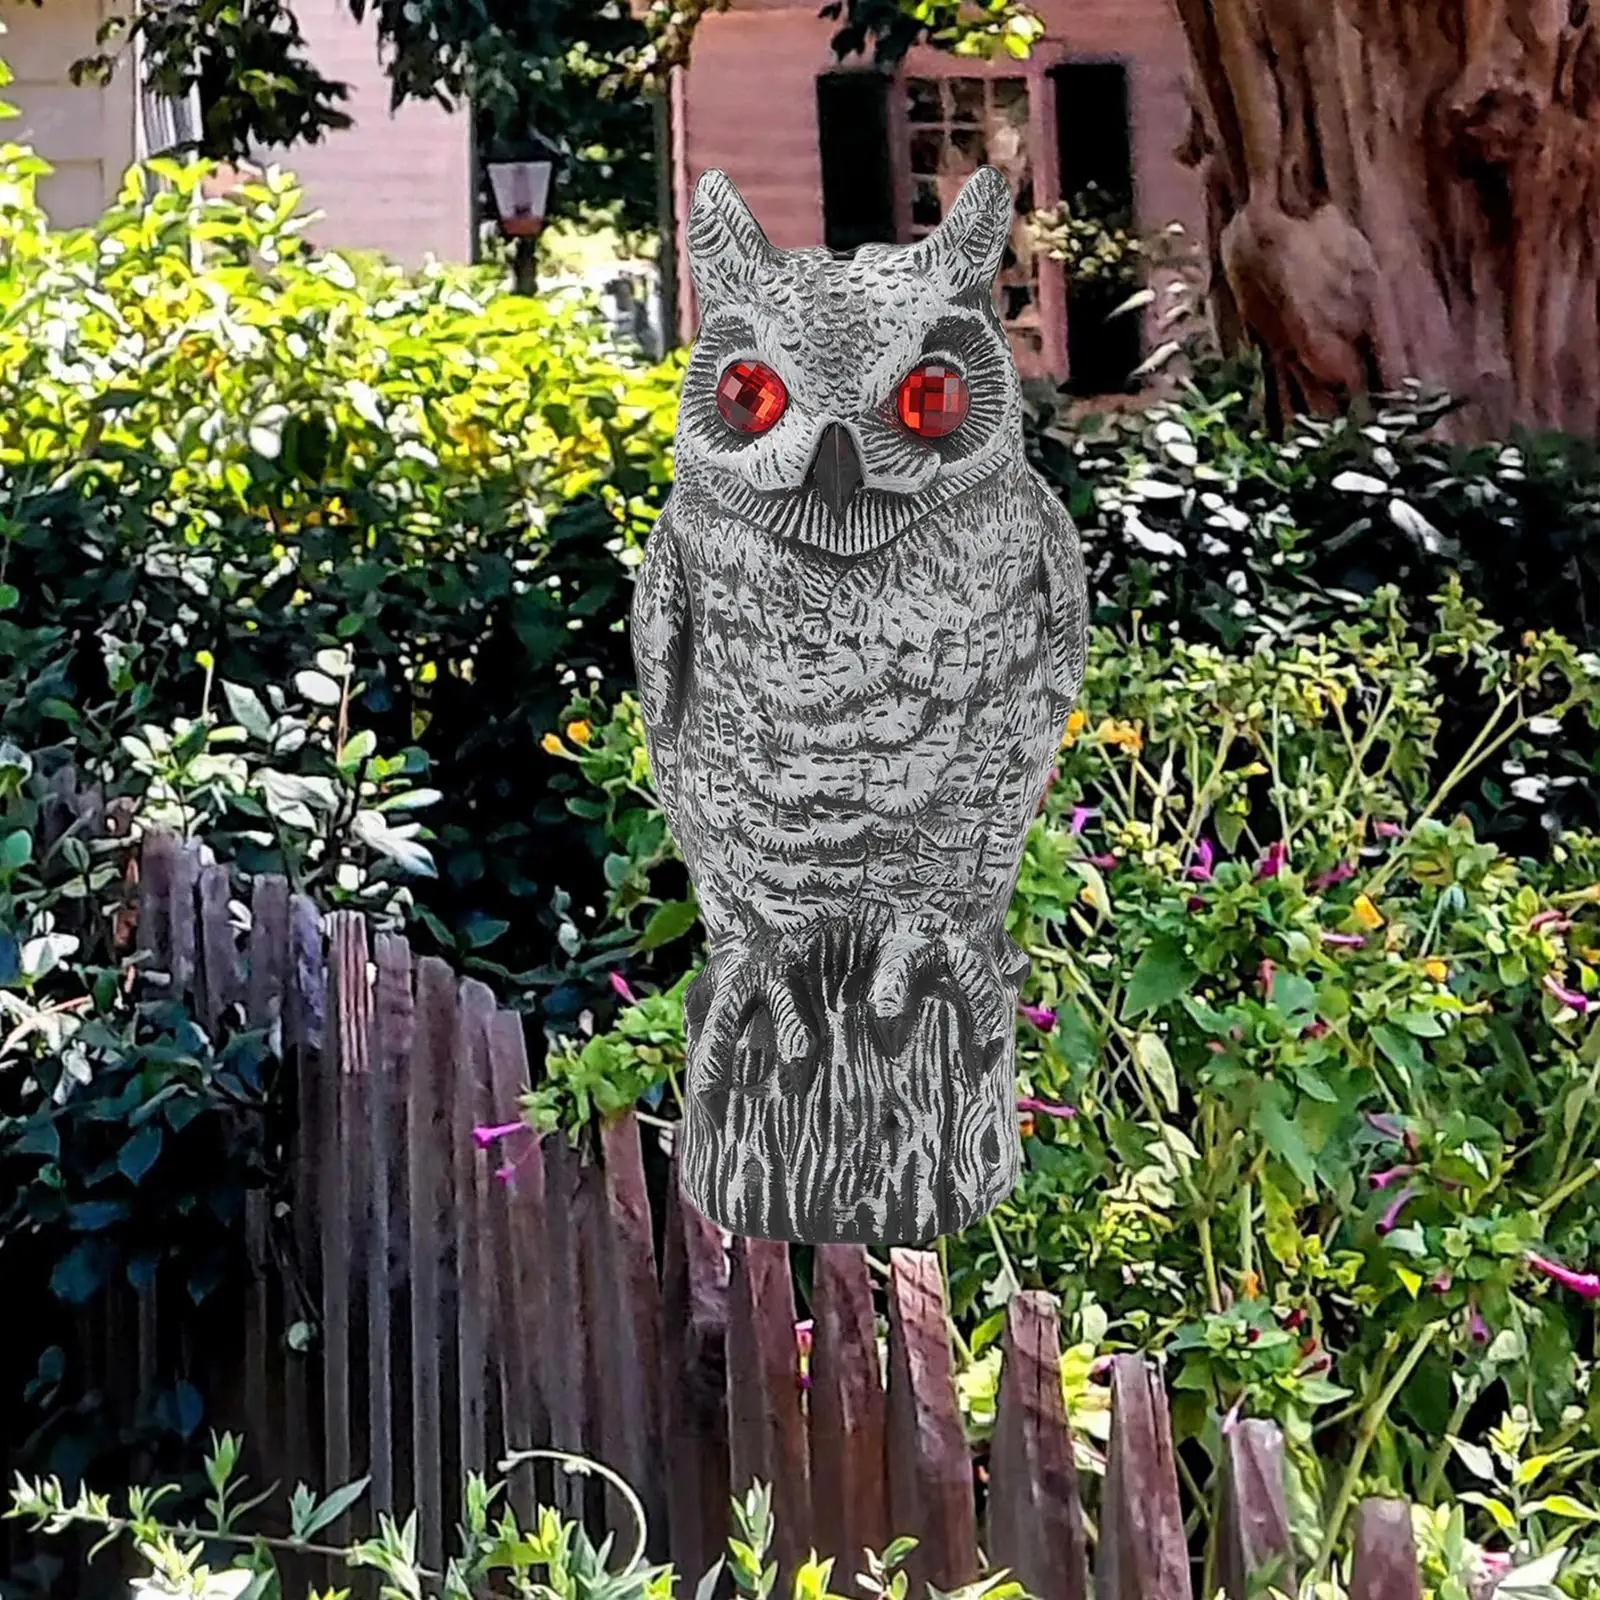 Fake Owl Bird Deterrent Decoygarden Scarecrow Resin Red Eyes Scare Statue Squirrel Deterrents for Lawn Home Garden